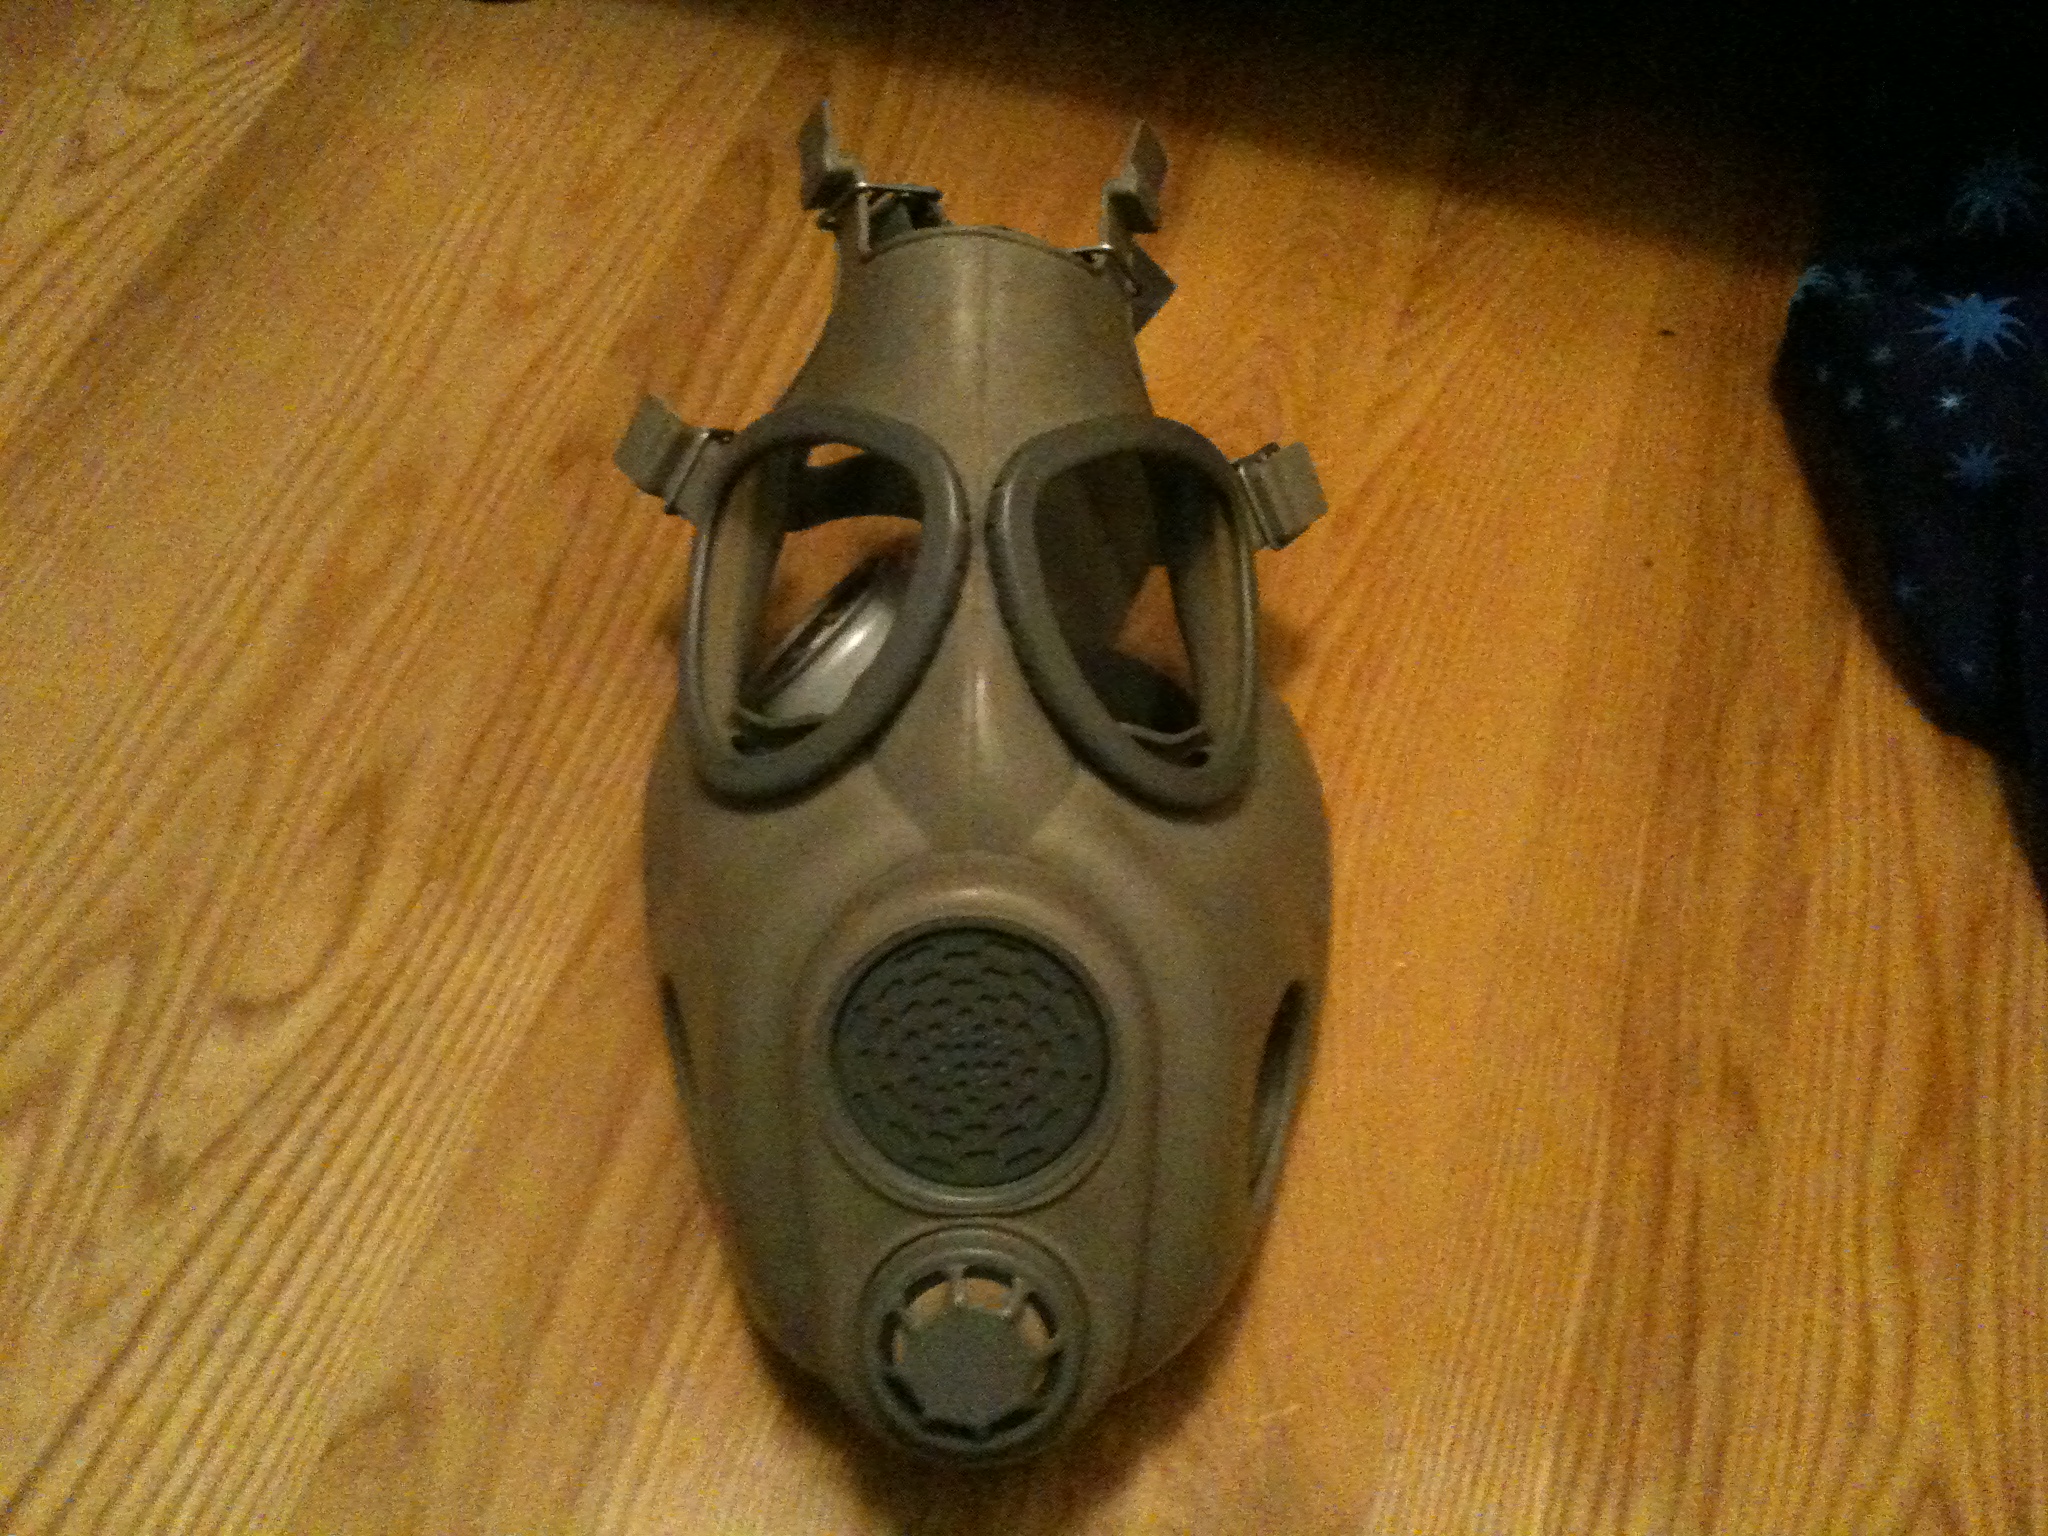 m10 gas mask